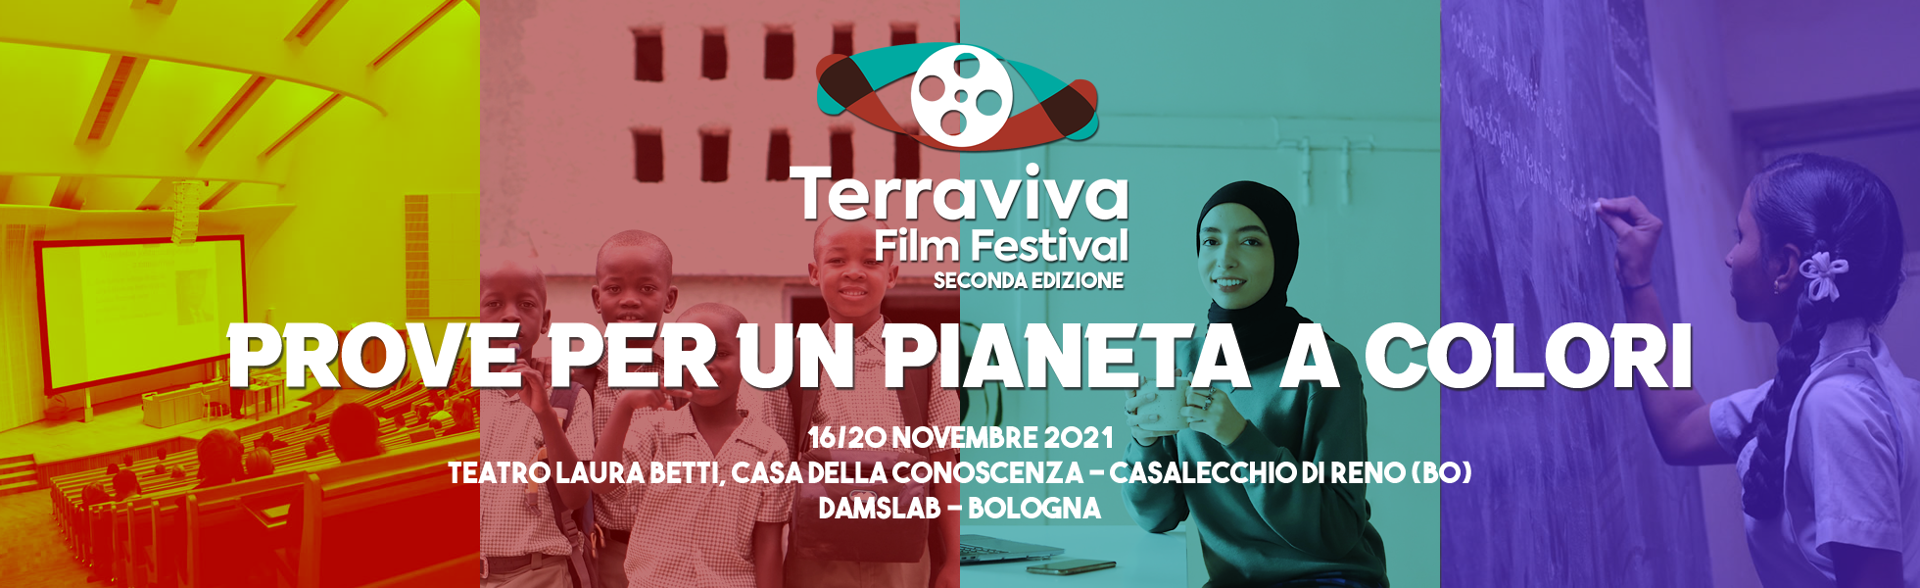 Banner del TerraViva Film Festival